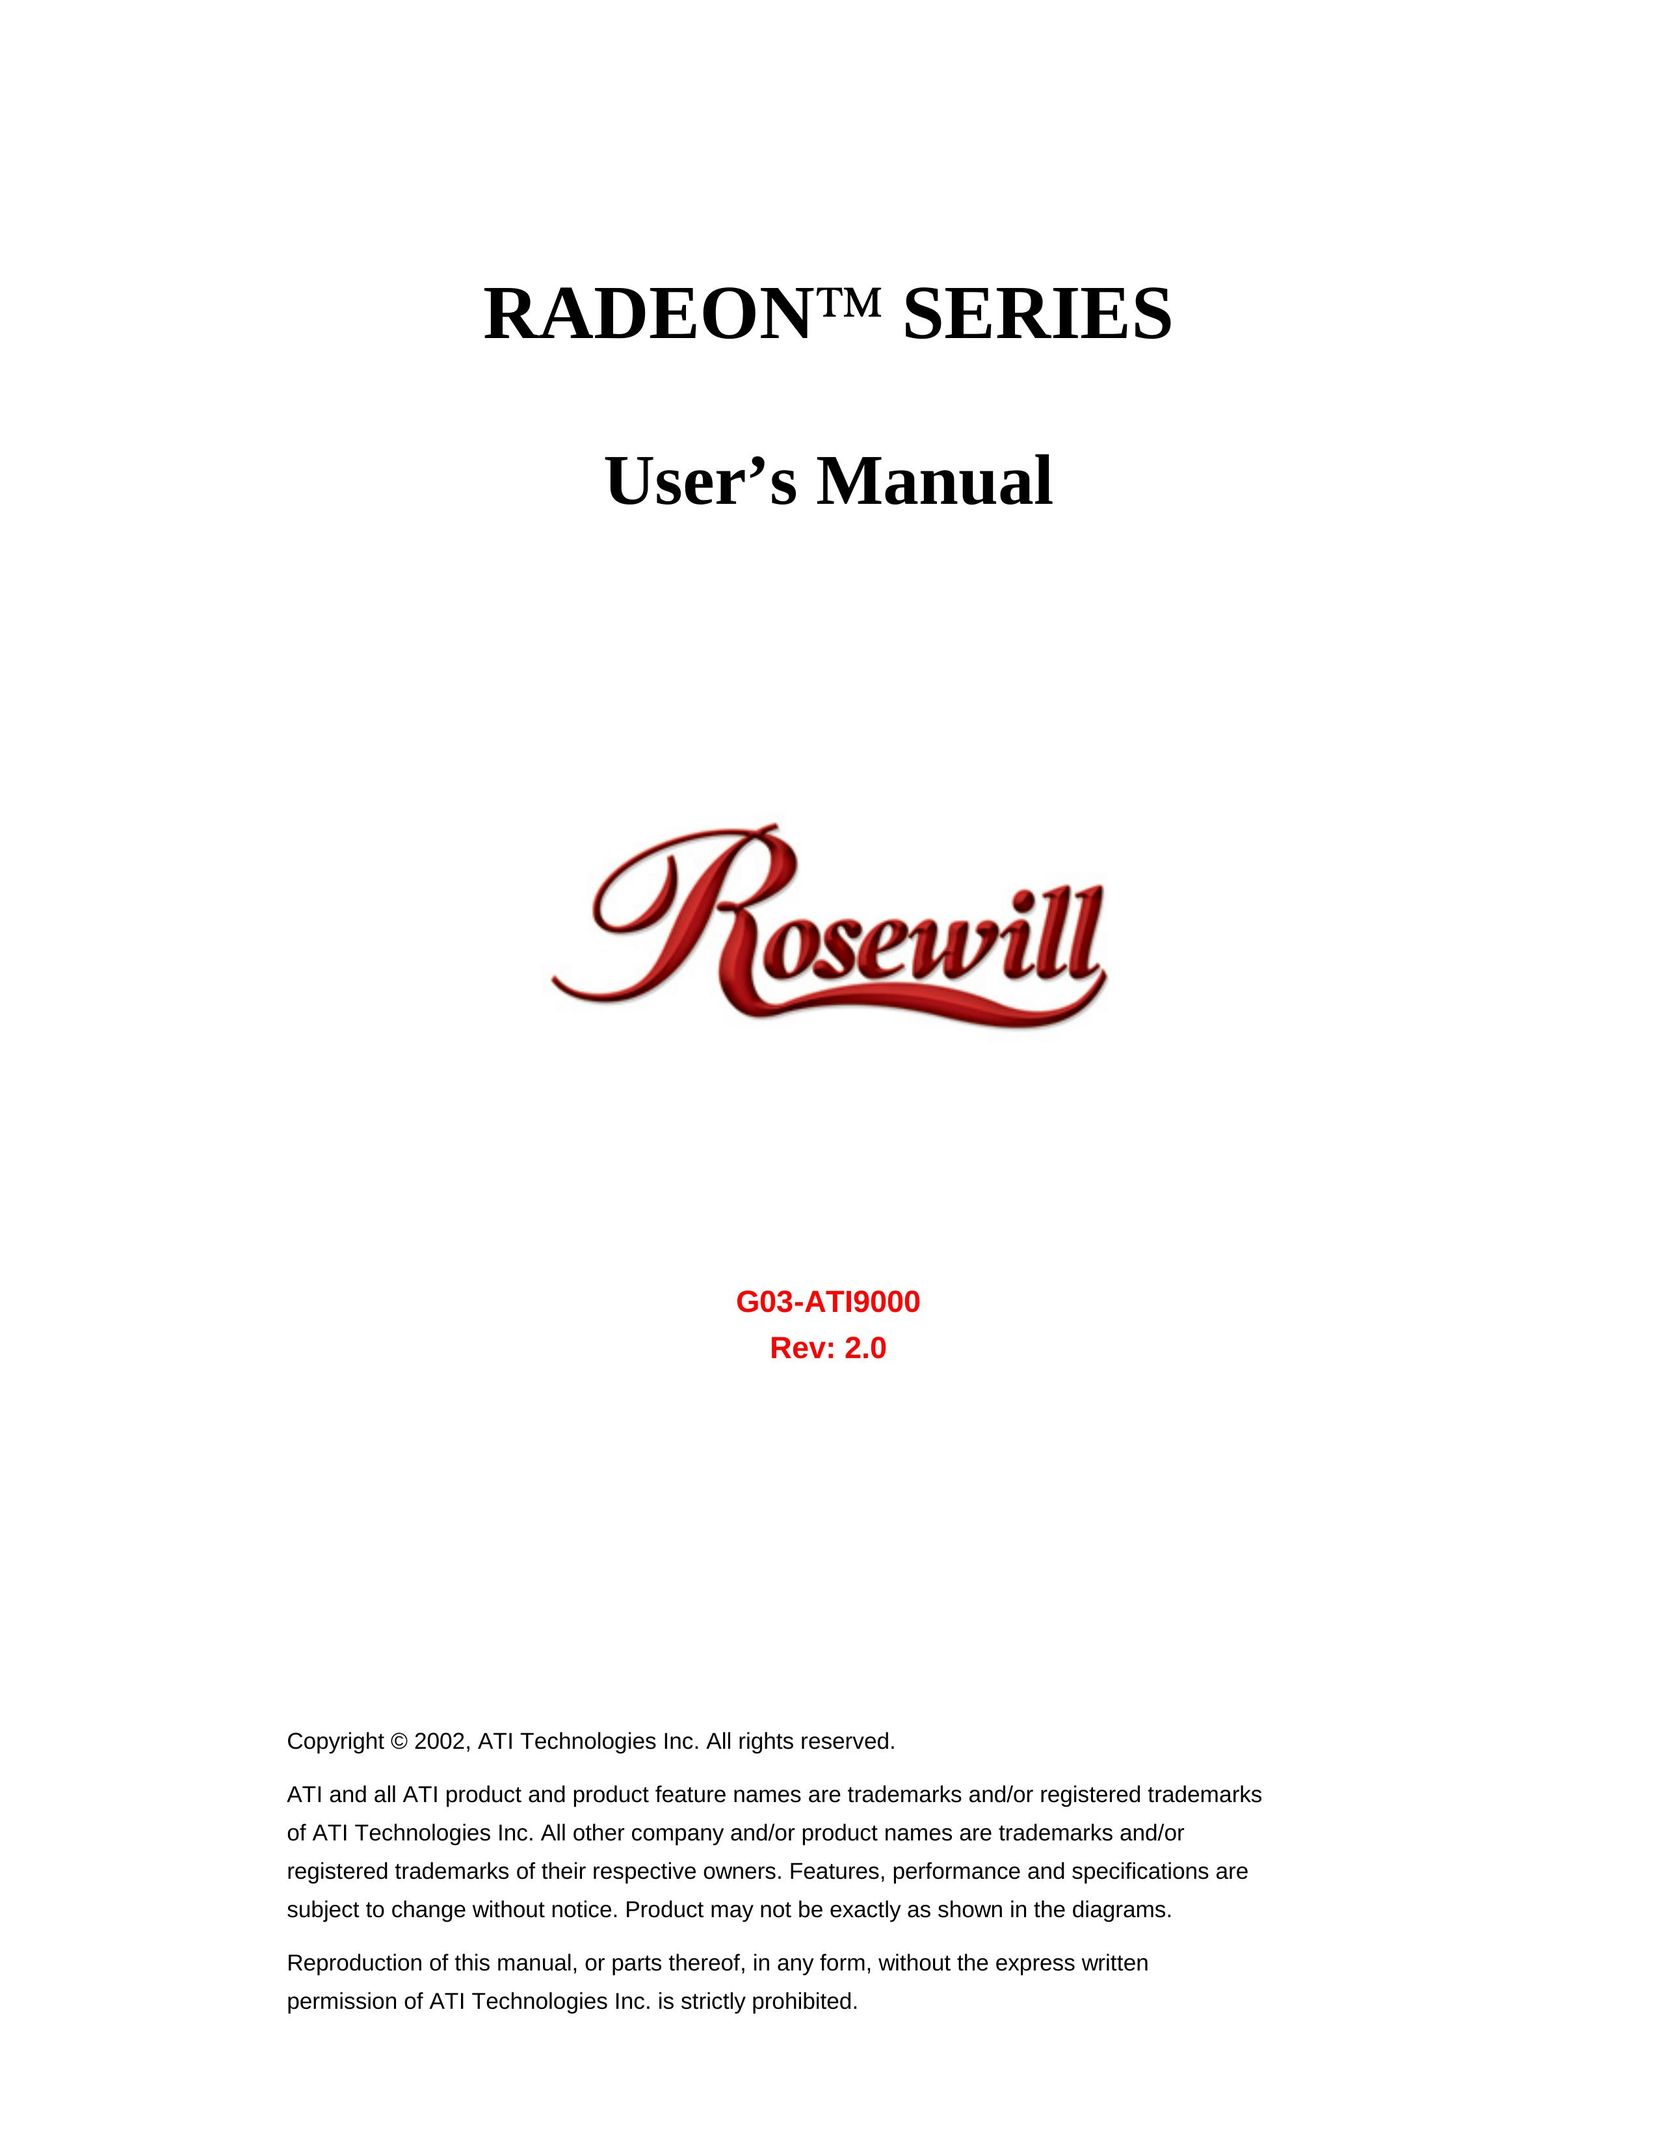 Rosewill G03-ATI9000 Computer Hardware User Manual